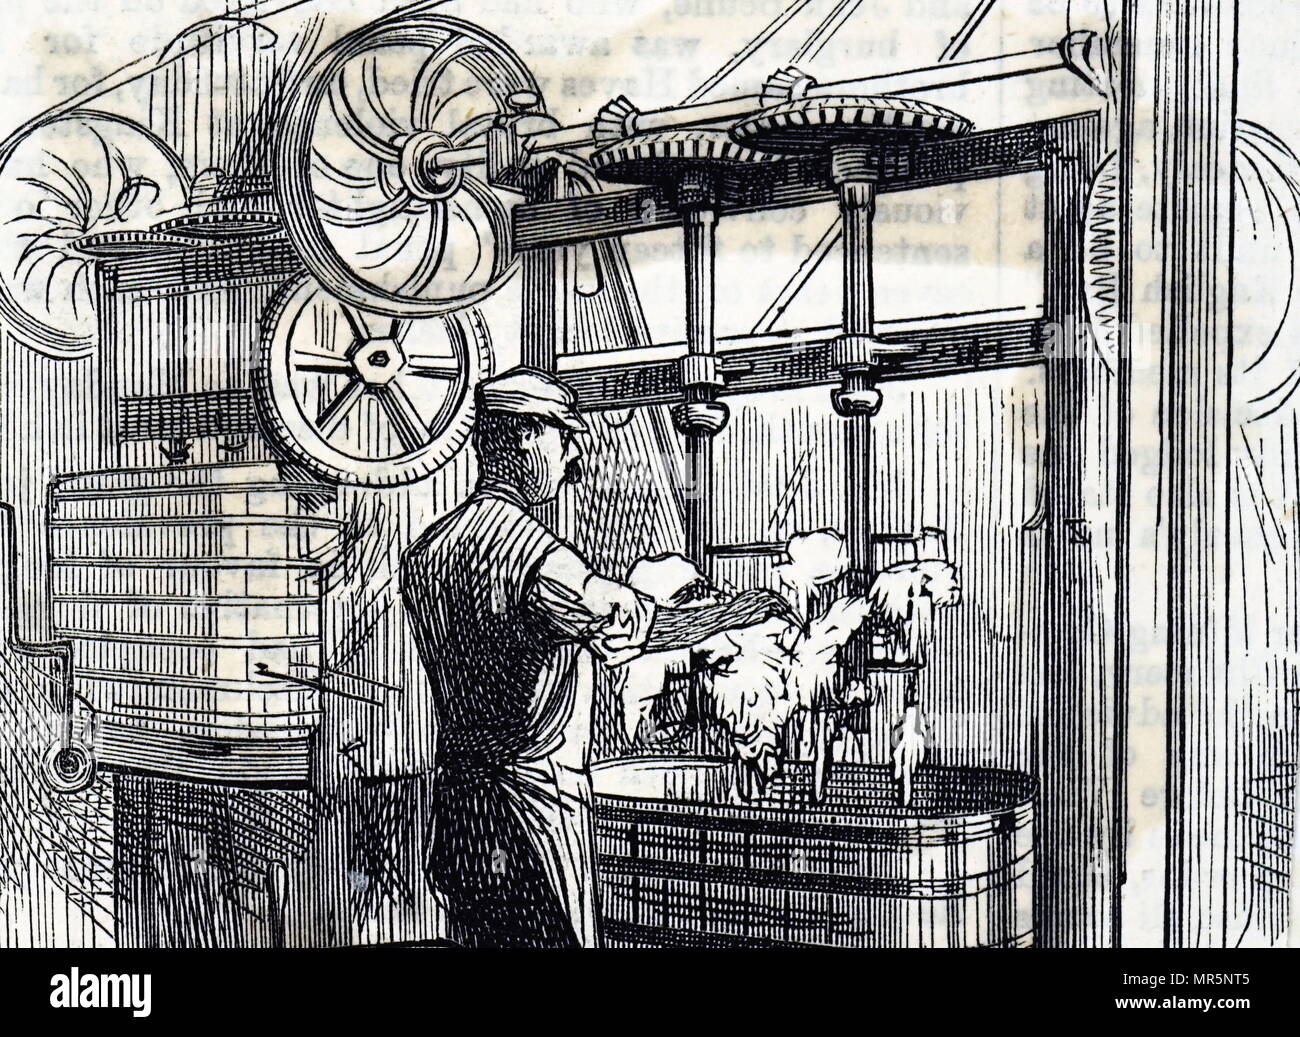 Gravur mit Teig mischen Wannen der Peek Frean & Co's Keksfabrik. Vom 19. Jahrhundert Stockfoto